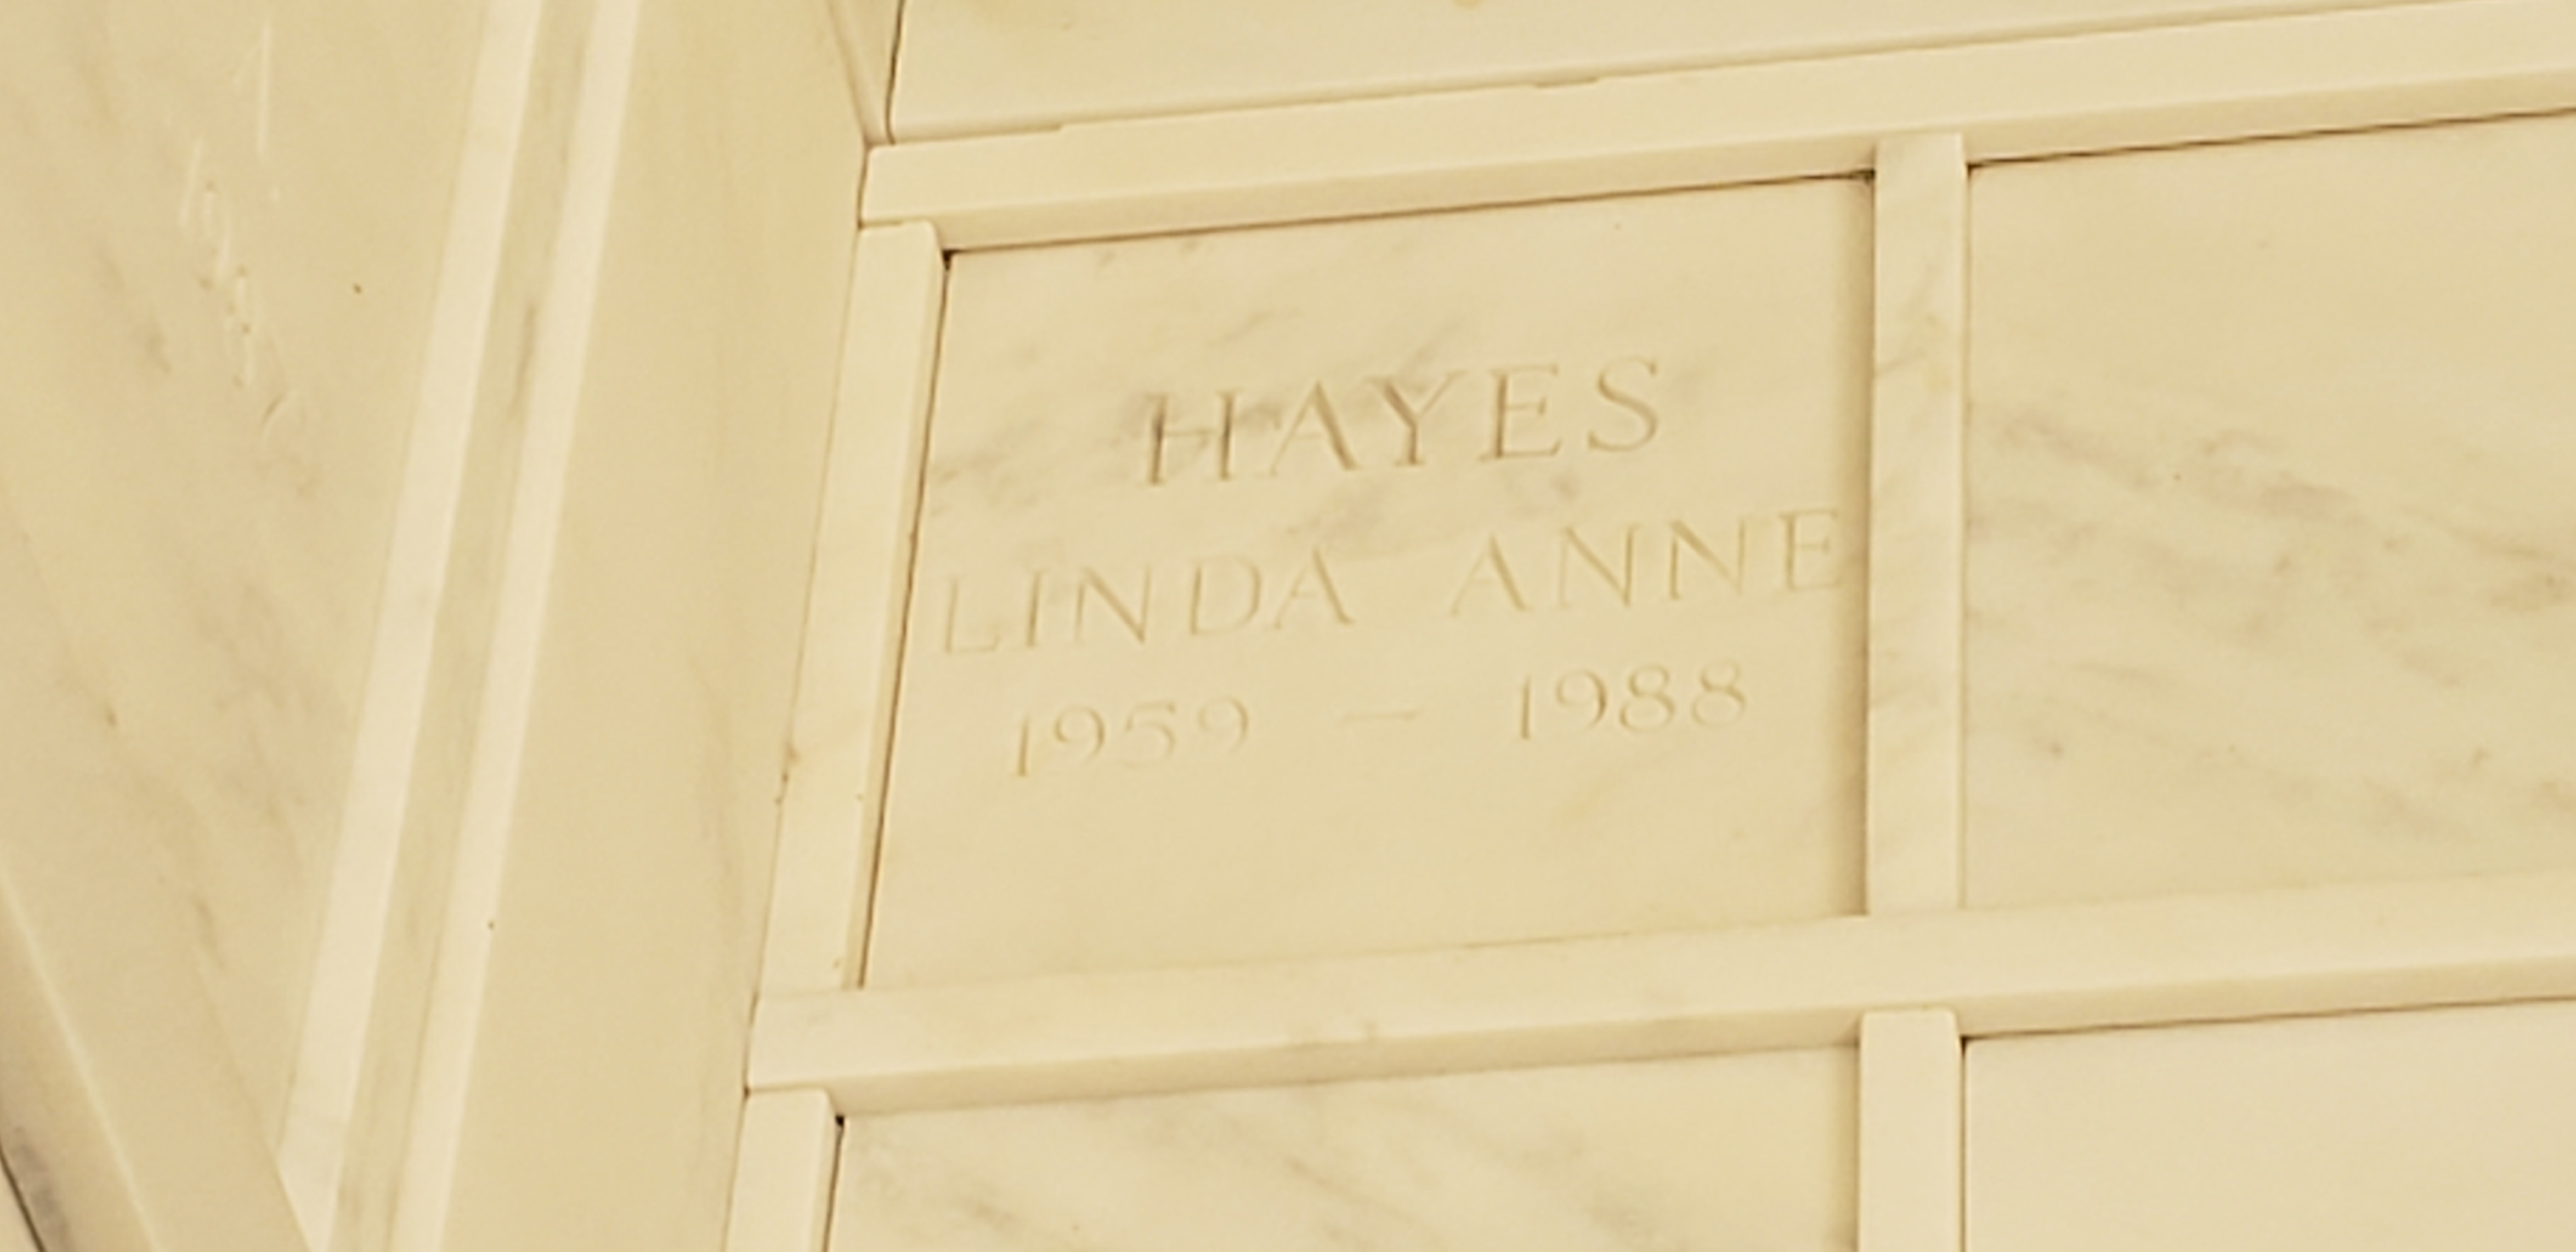 Linda Anne Hayes